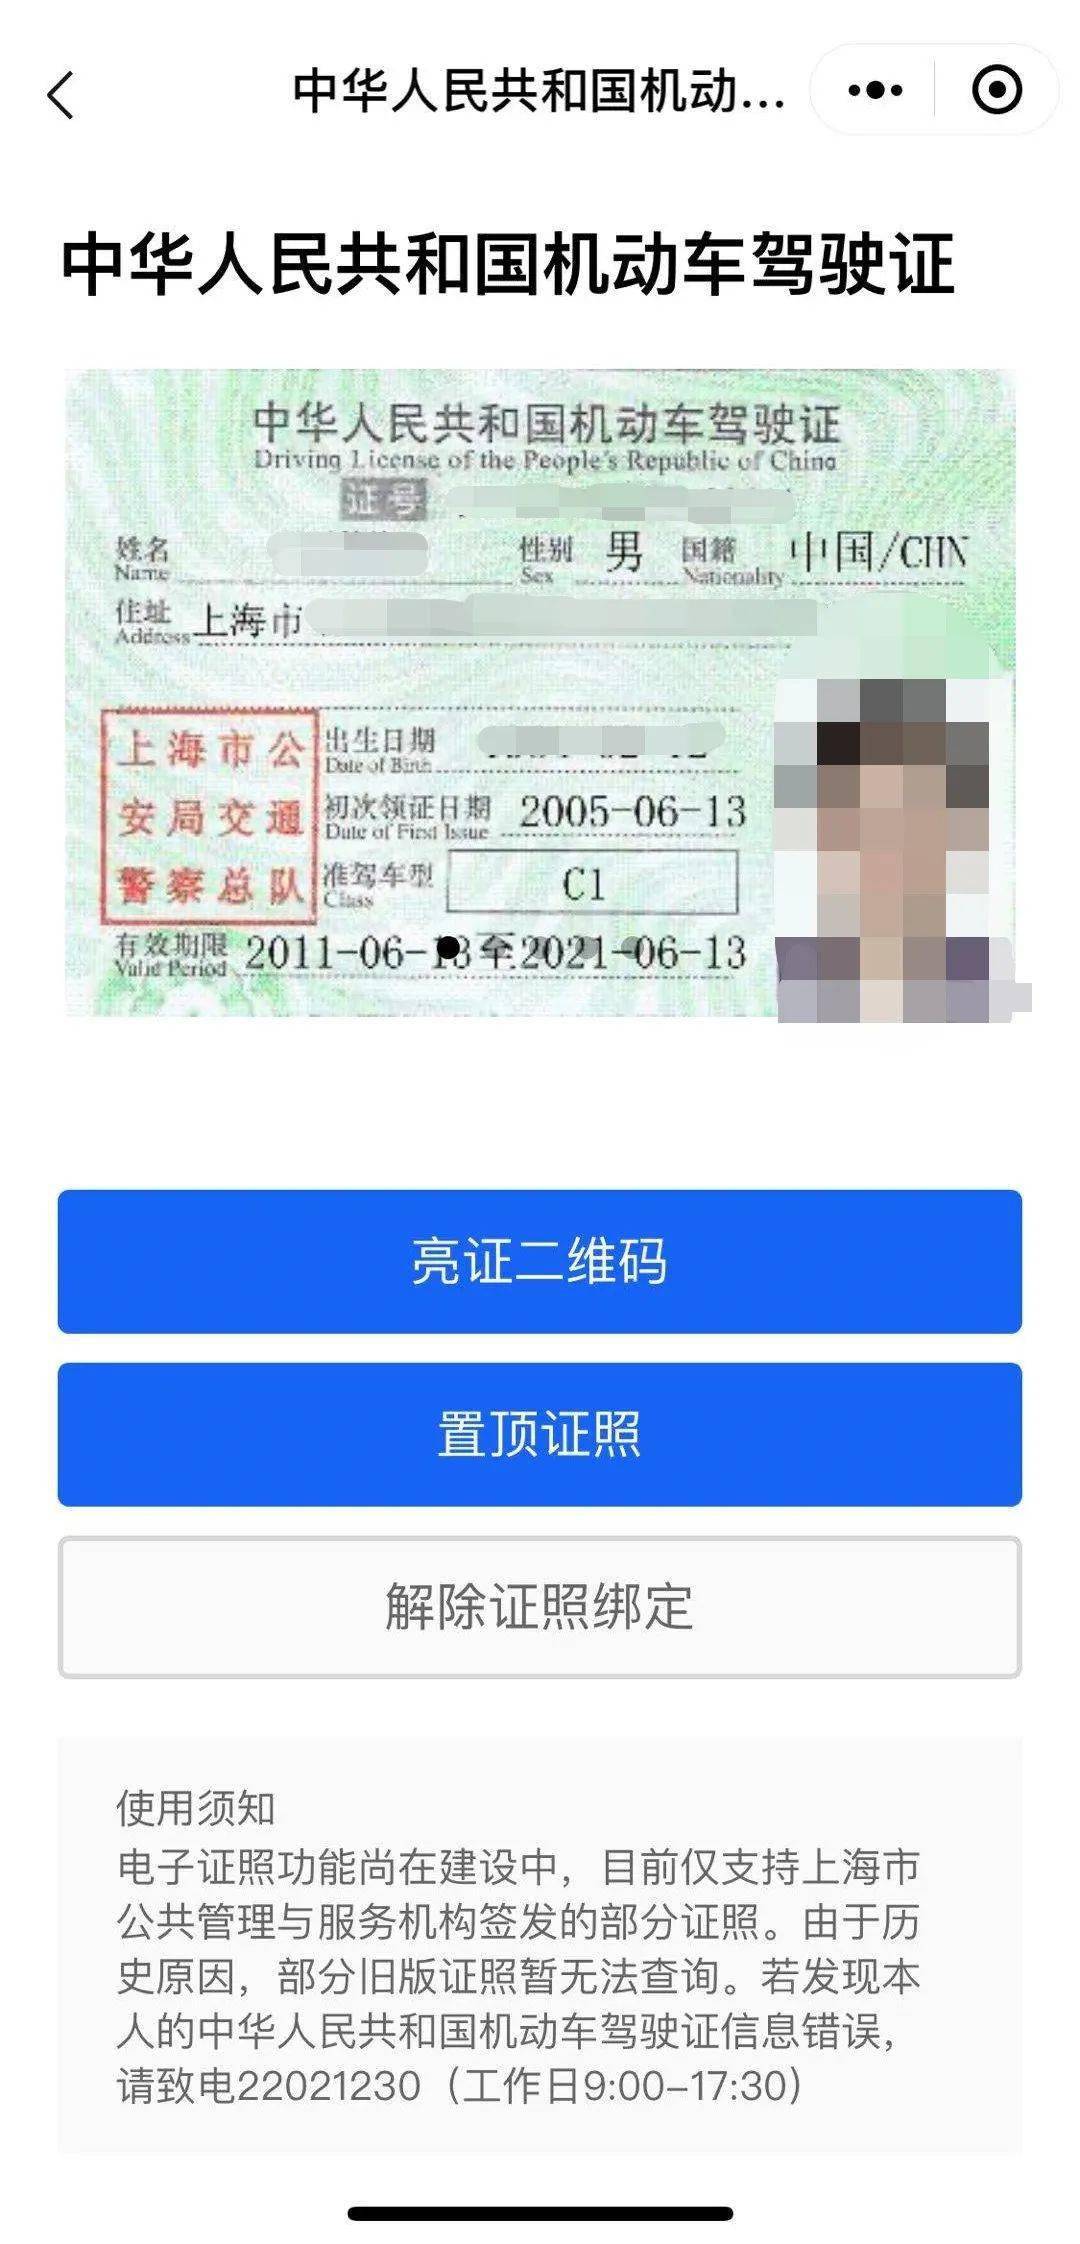 4,选择  中华人民共和国机动车驾驶证,即可看到自己的驾驶证啦!